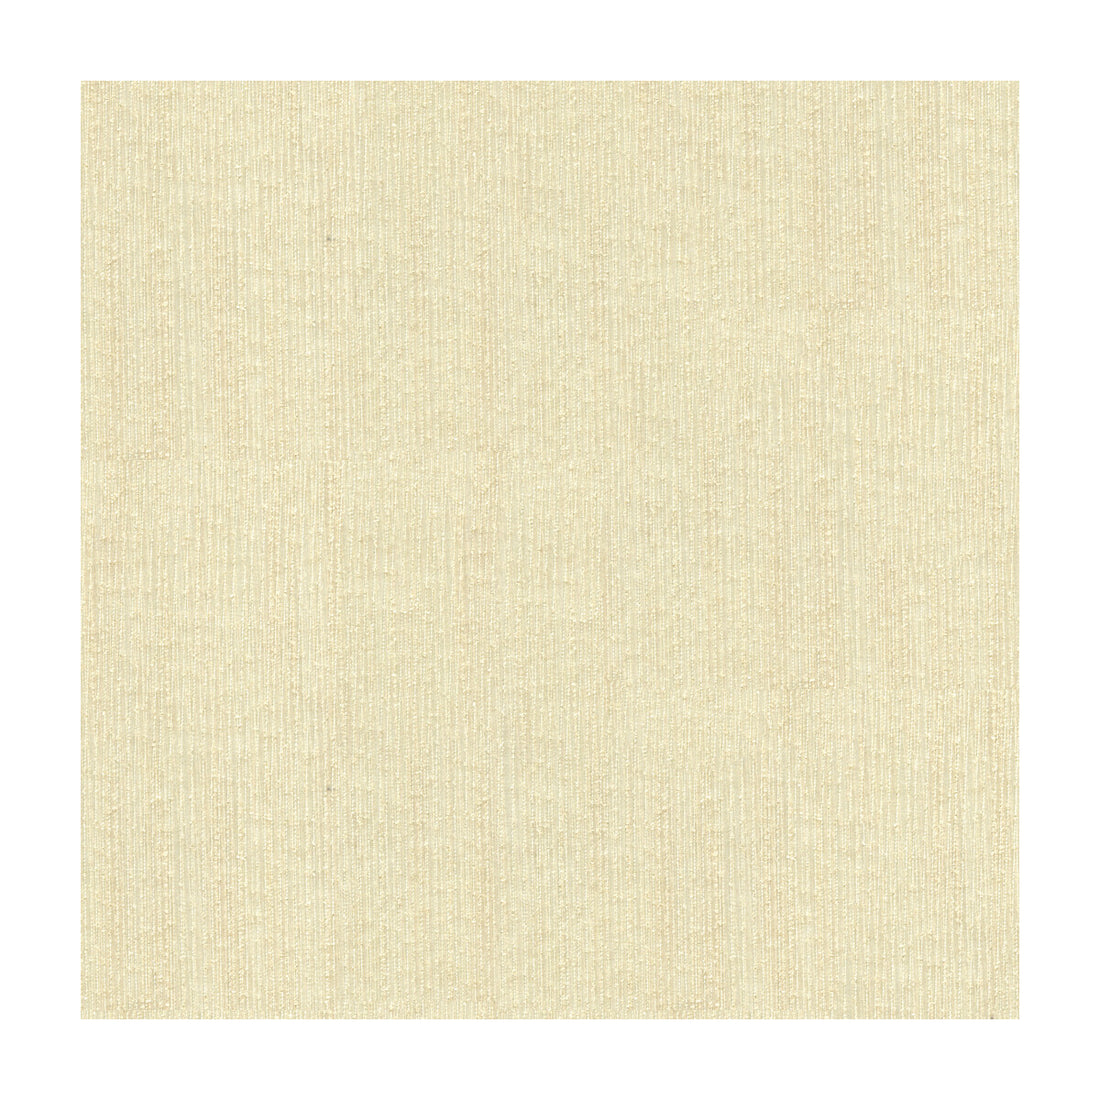 Kravet Basics fabric in 4109-1 color - pattern 4109.1.0 - by Kravet Basics